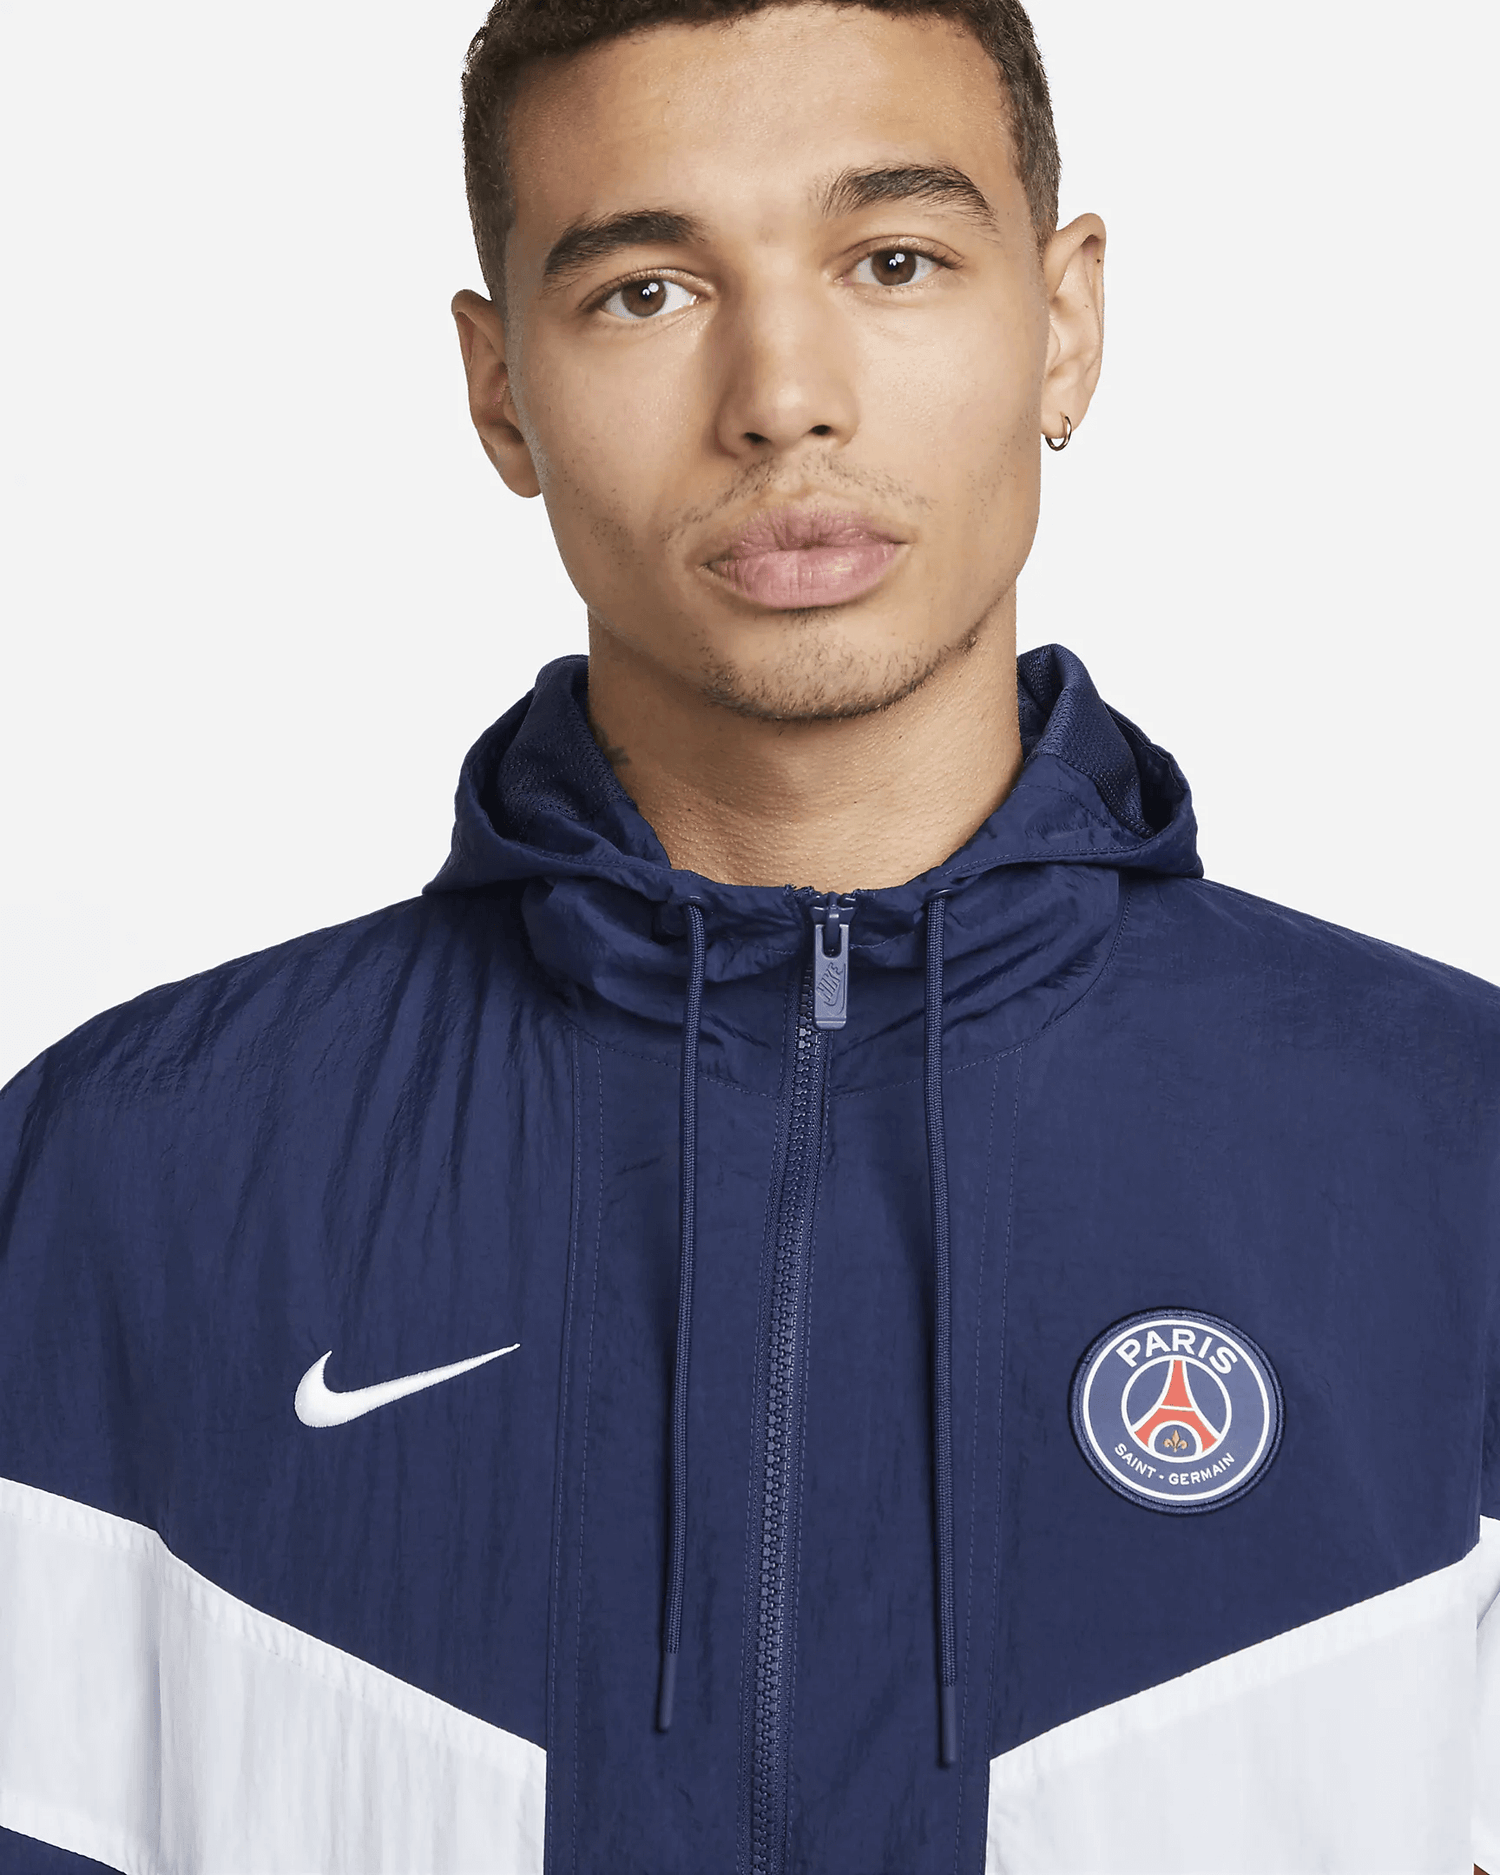 Paris Saint-Germain Women's Anthem Jacket. Nike LU